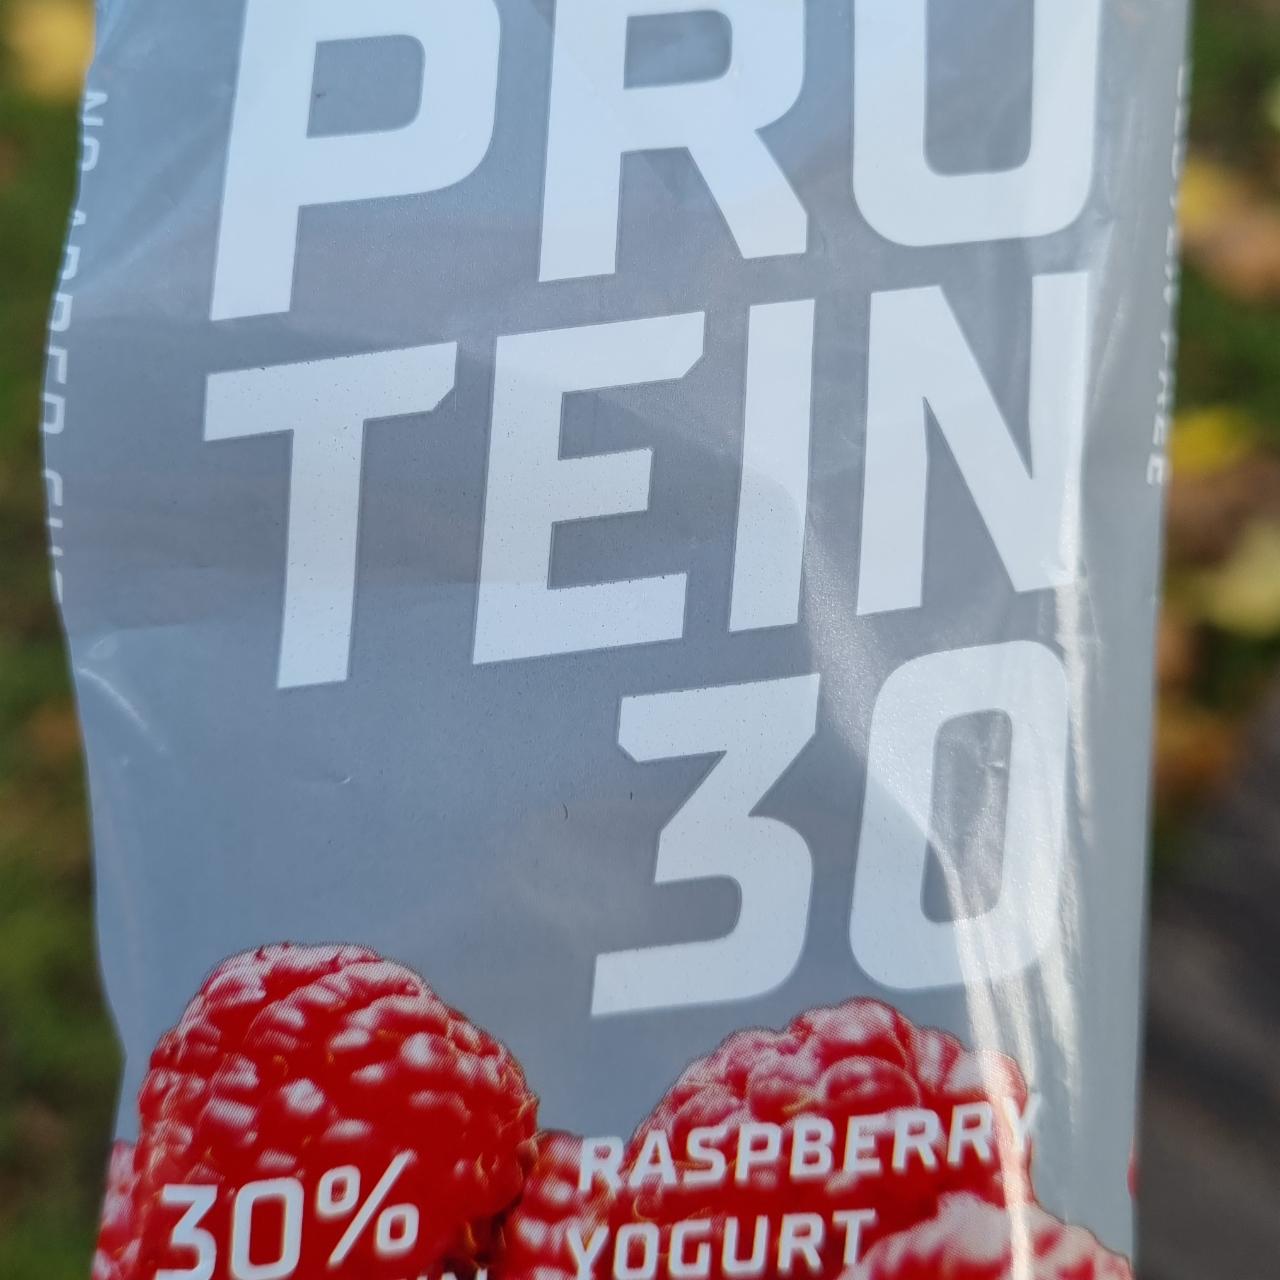 Фото - протеиновый батончик 30% малиновый йогурт Progress Nutrition